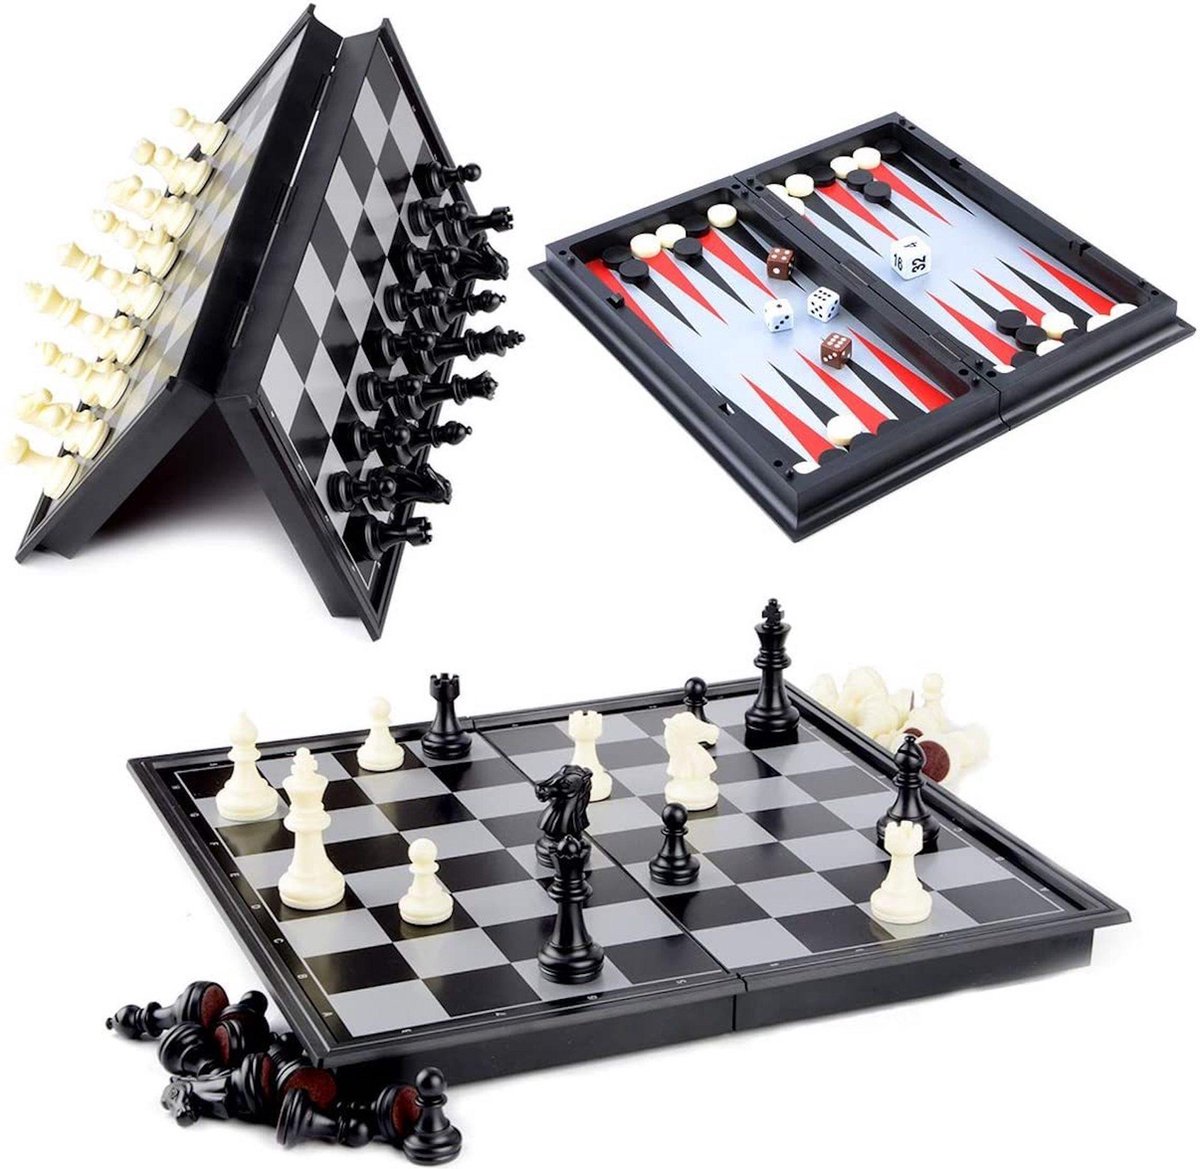 Schaakbord | Dambord | Backgammon | Schaakspel | Schaakset | Schaken | Dammen | Met Schaakstukken | 3-in-1 Bordspel | Chess | Plastic | Opklapbaar | Magnetisch | 32 x 32 cm